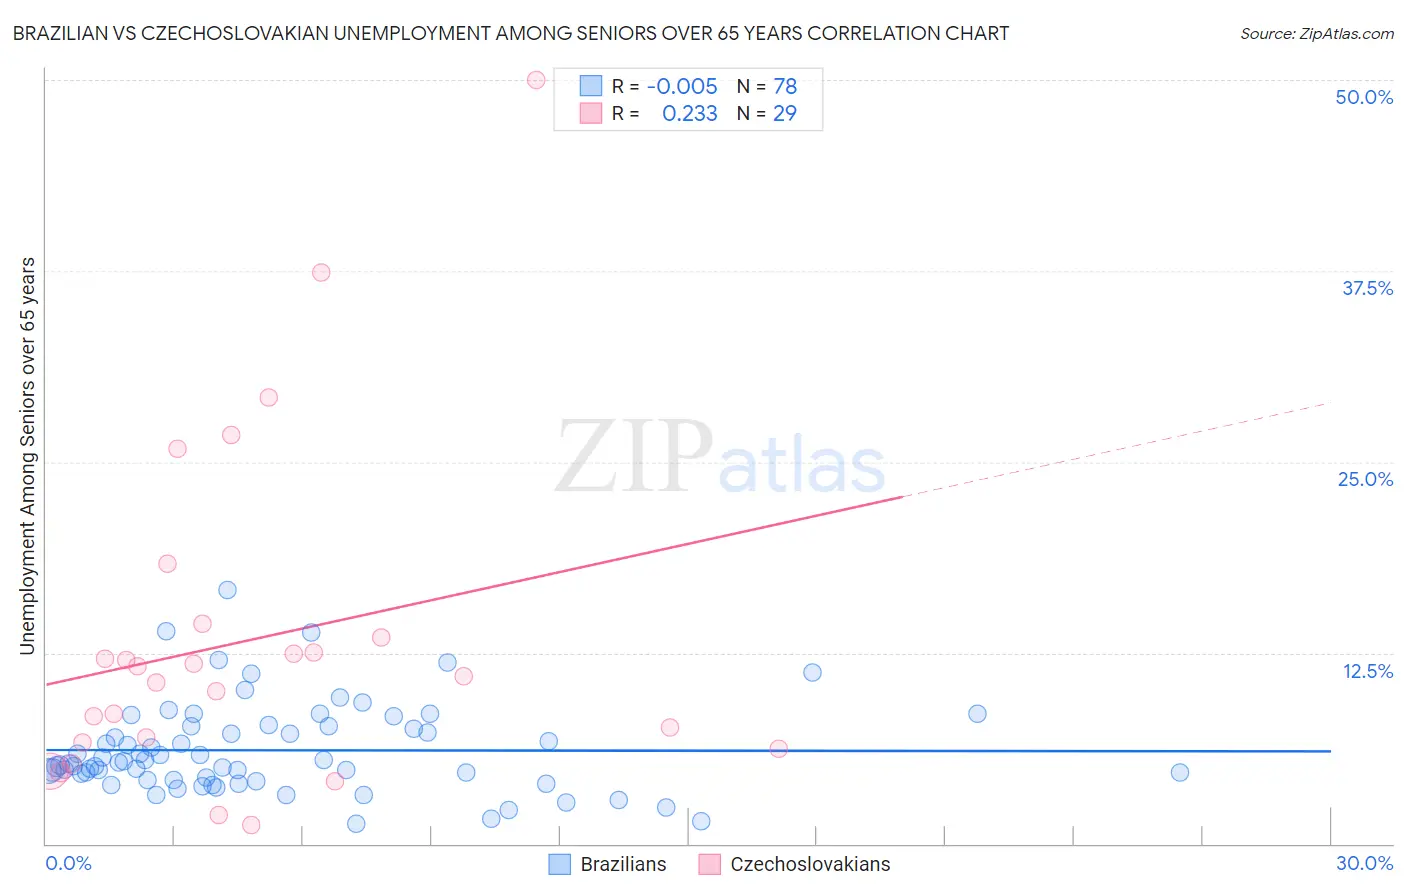 Brazilian vs Czechoslovakian Unemployment Among Seniors over 65 years